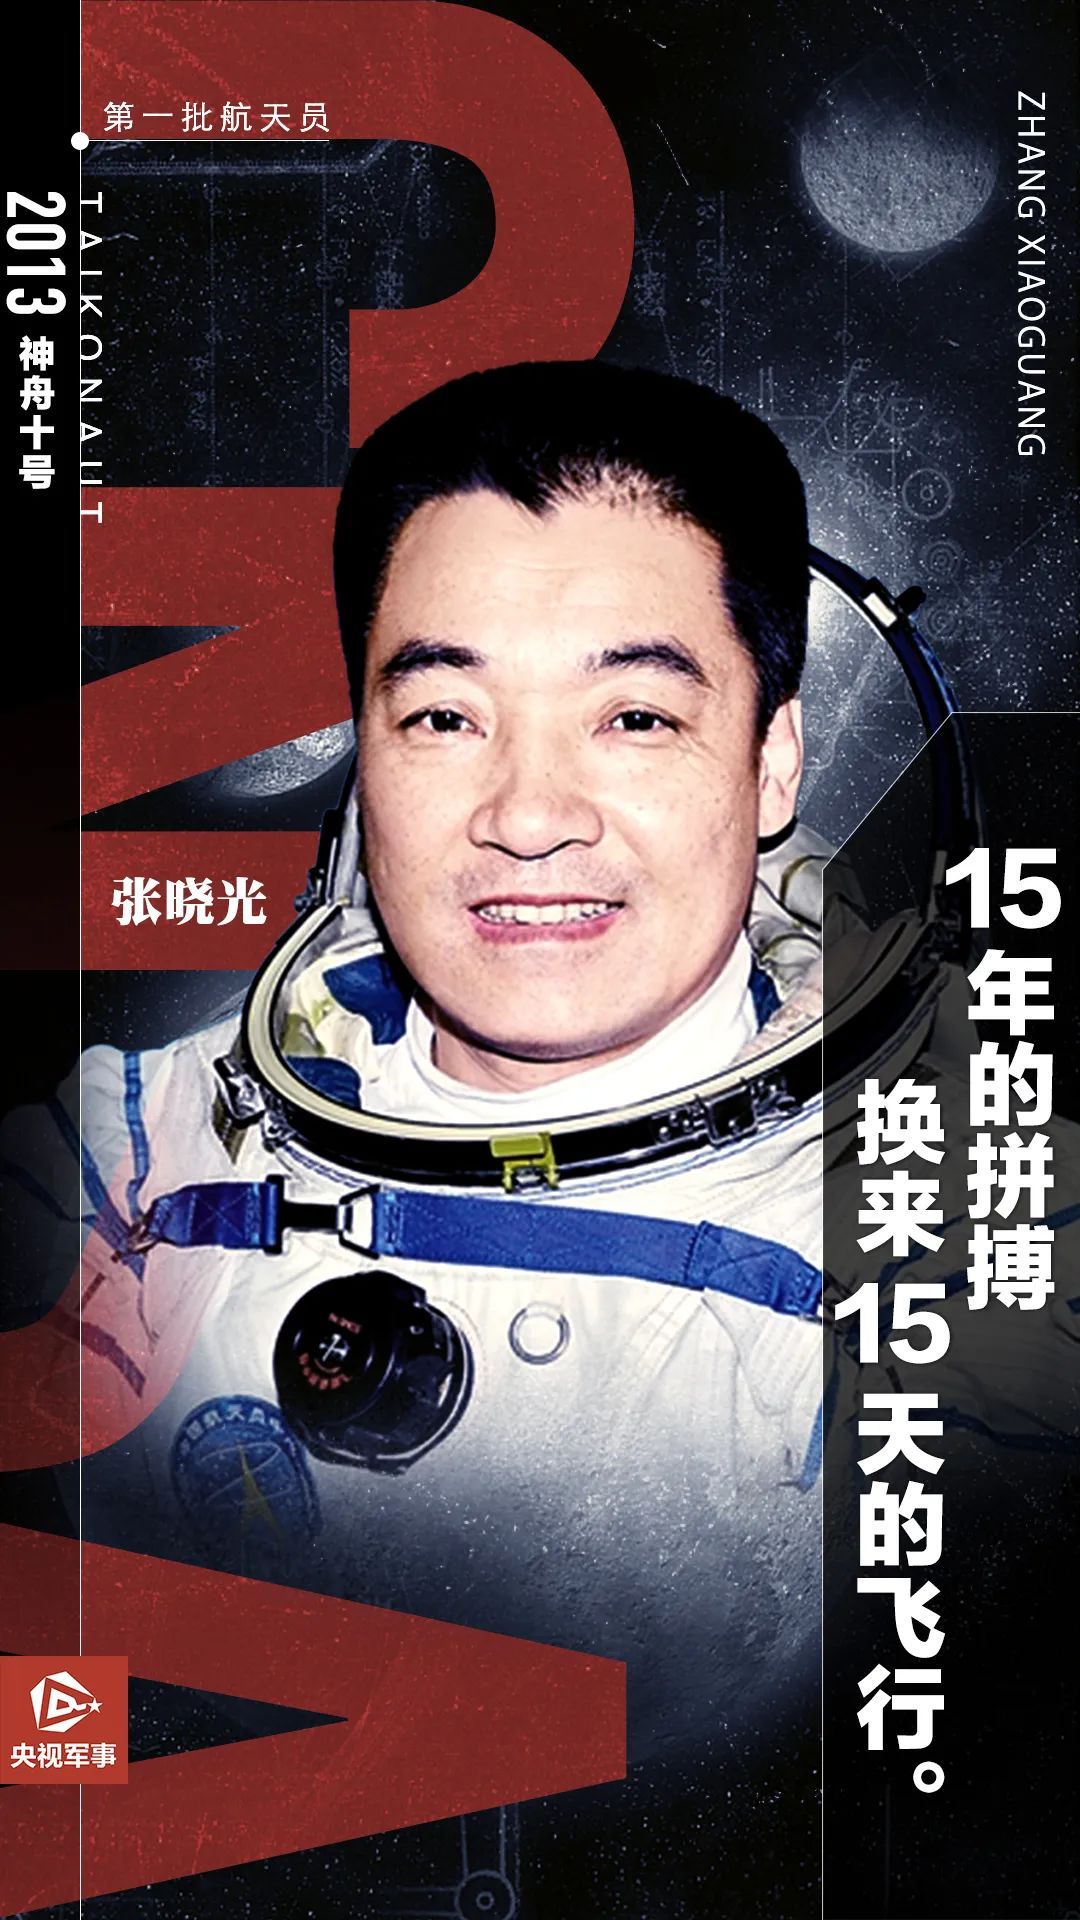 盘点中国历届航天飞行员_哔哩哔哩_bilibili